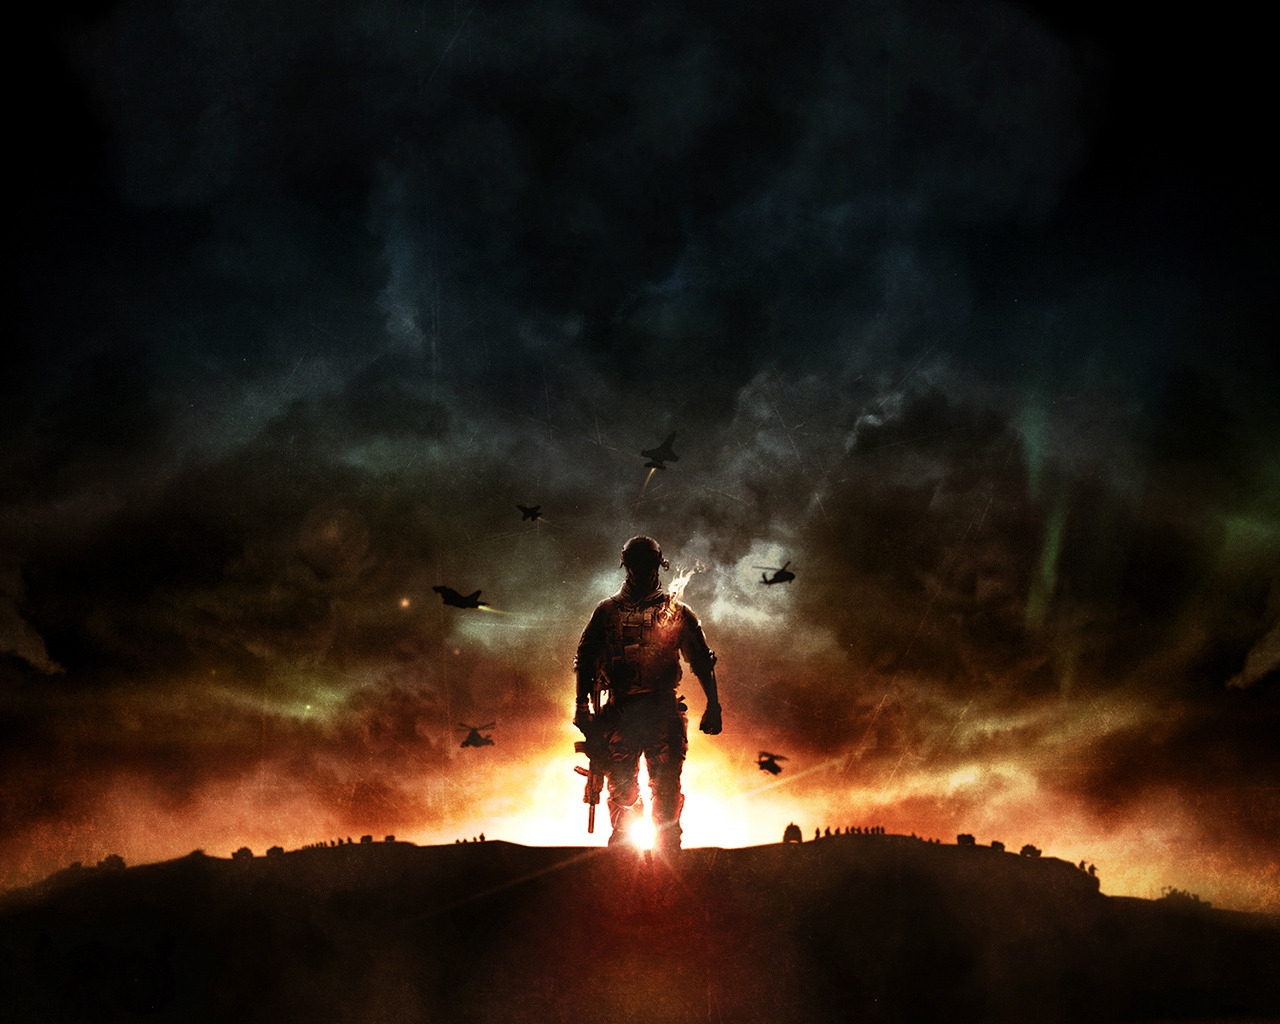 Battlefield 4 Sunset War for 1280 x 1024 resolution